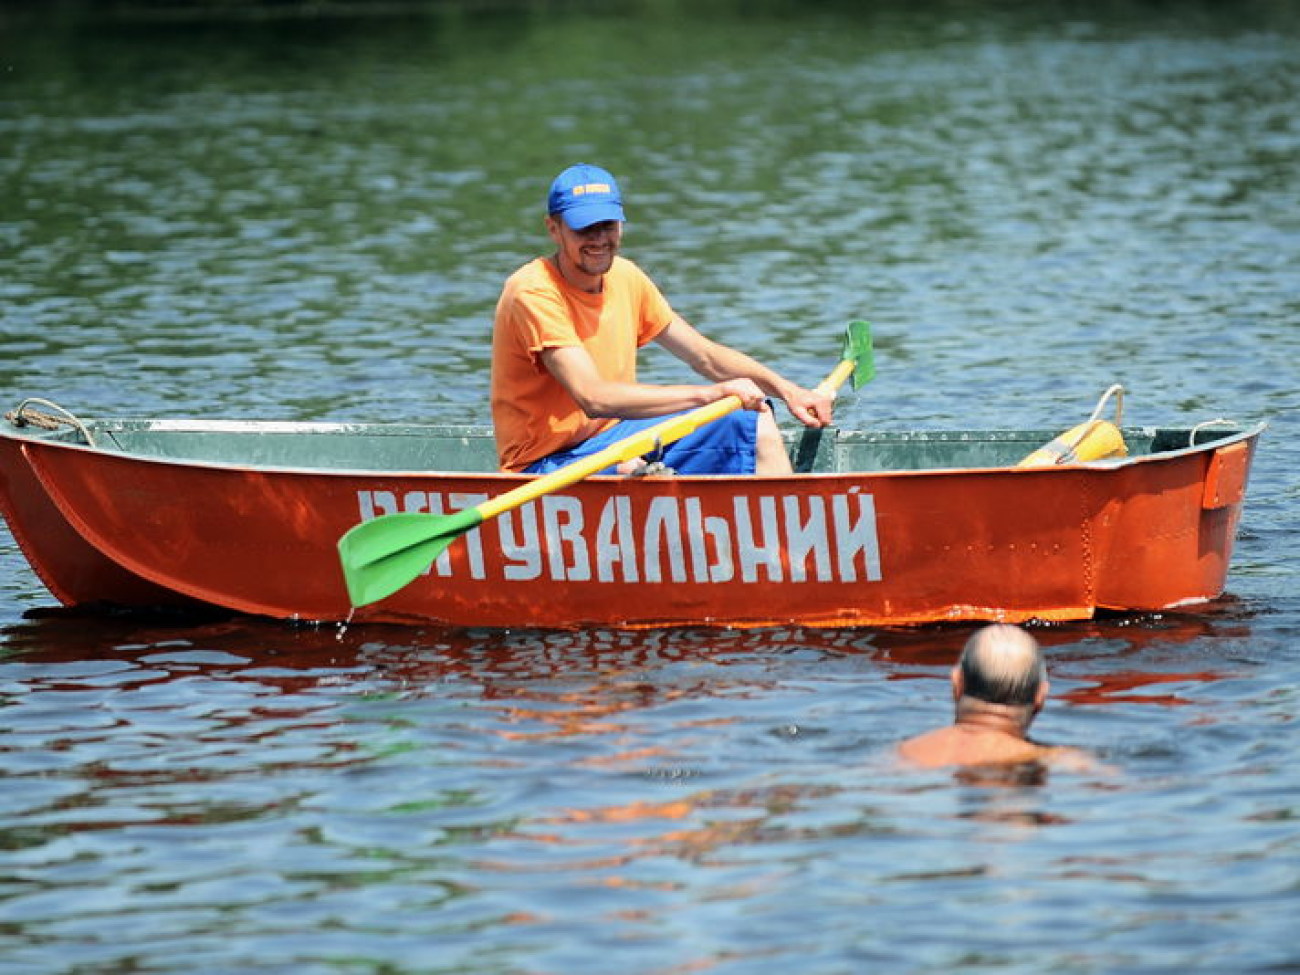 В Киеве разрешено купаться только в &#171;Детском&#187; Гидропарке, 12 июня 2013г.